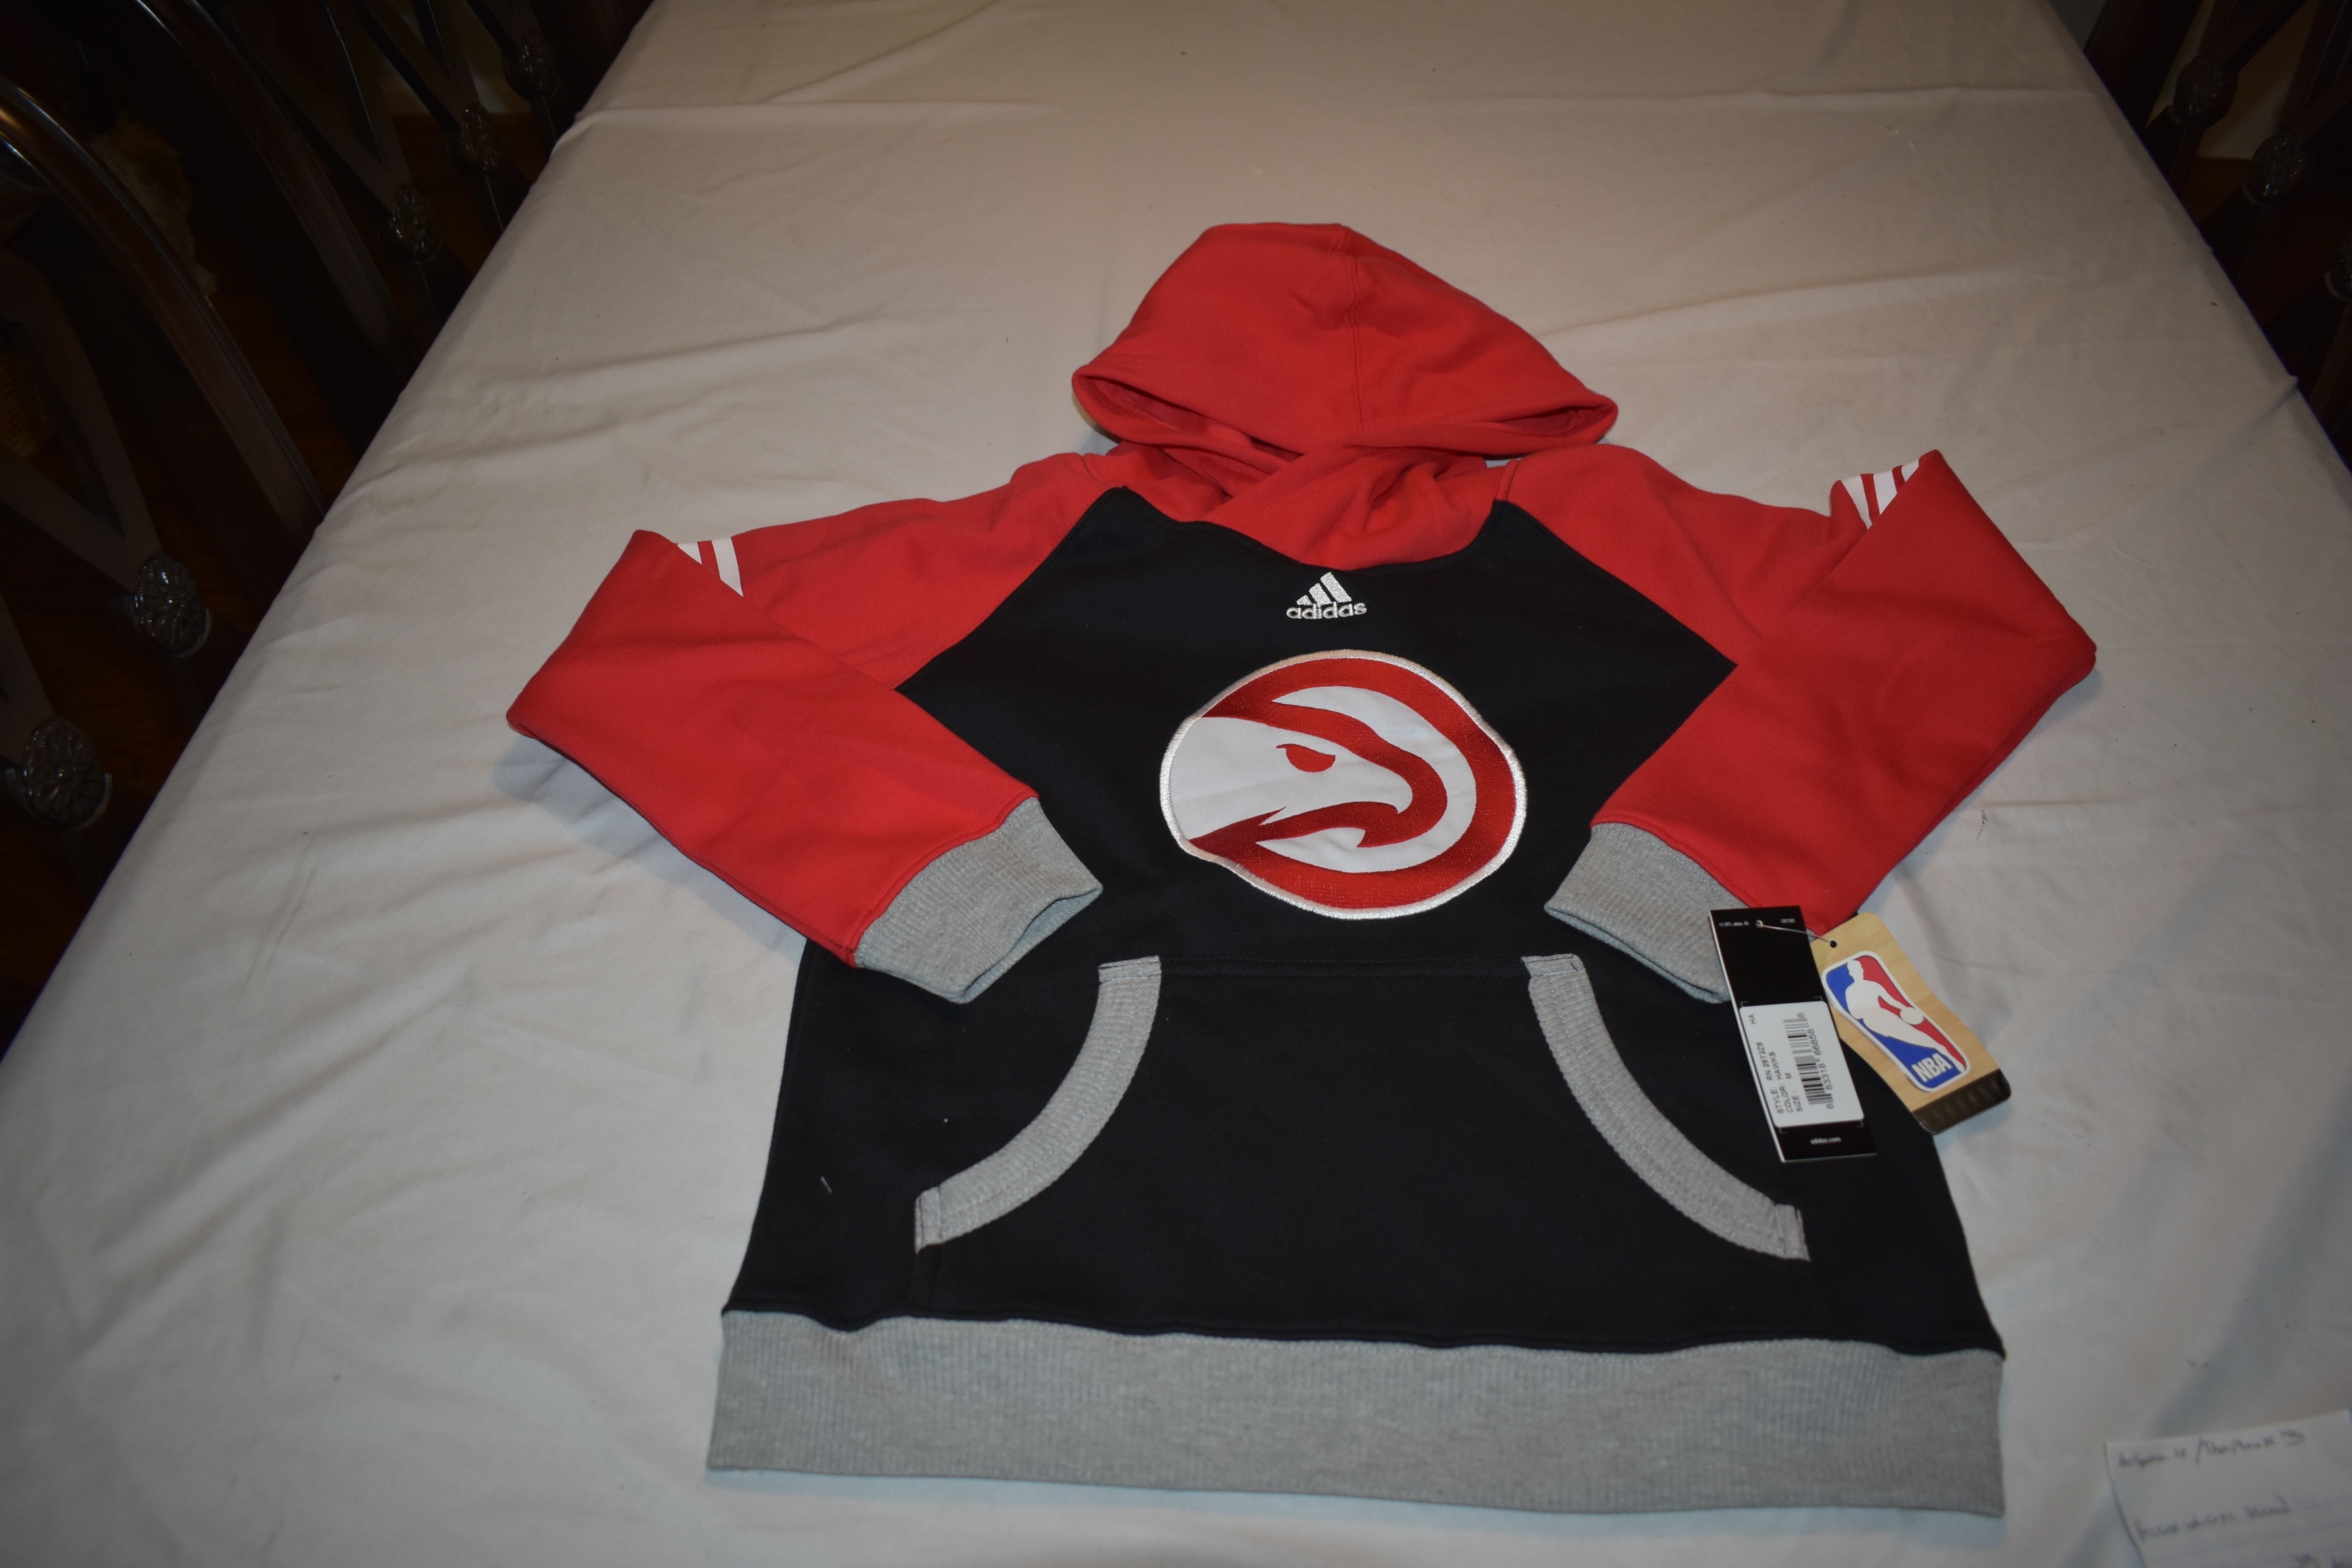 NEW - NBA Atlanta Hawks Adidas Hooded Sweatshirt, Youth Medium